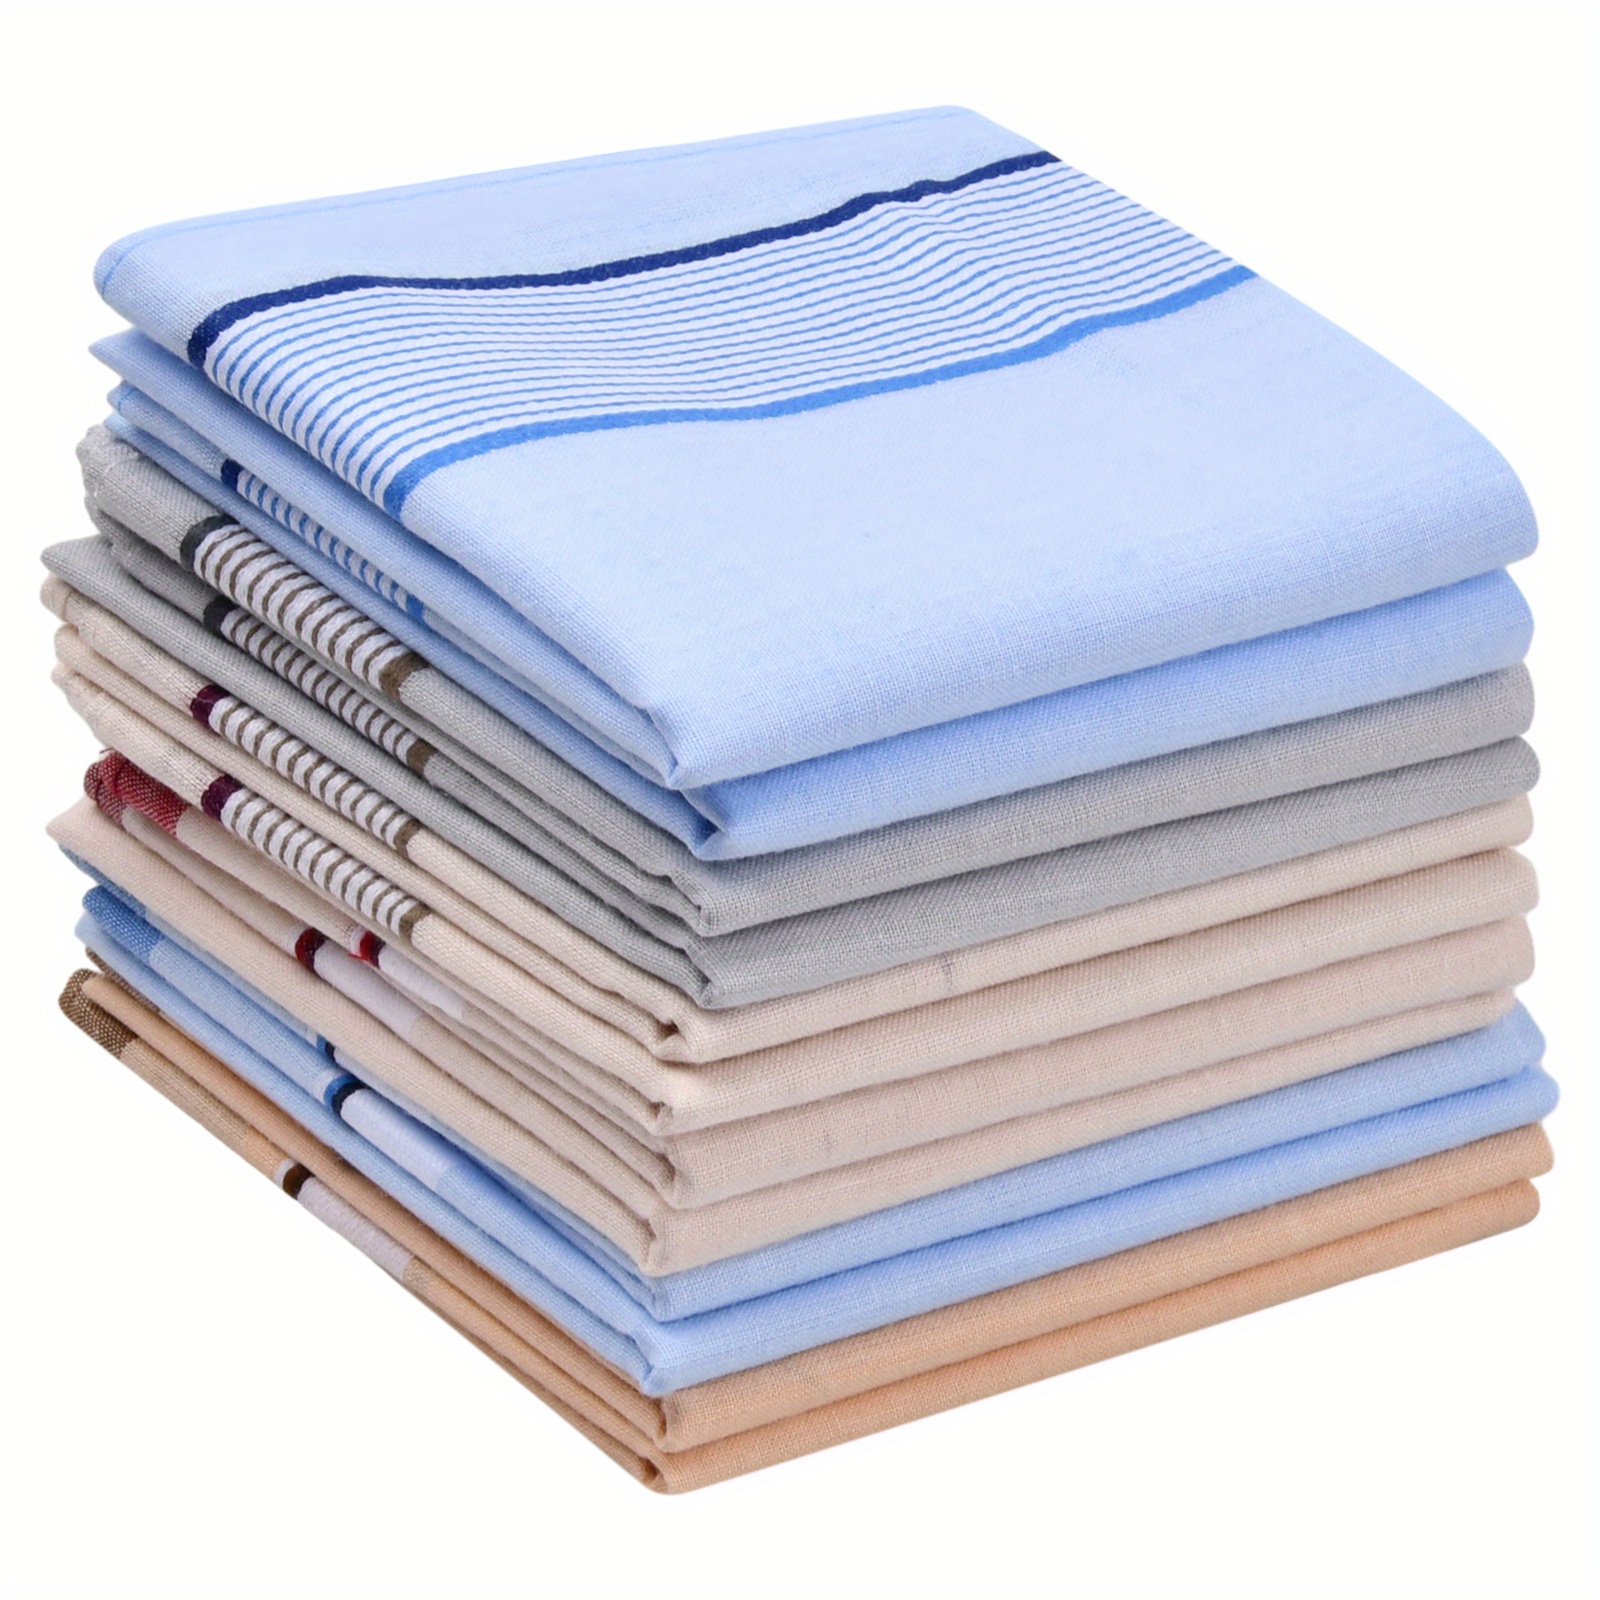 

12pcs Men's Cotton Handkerchiefs Set, Reusable Pocket Squares With Plaid Pattern